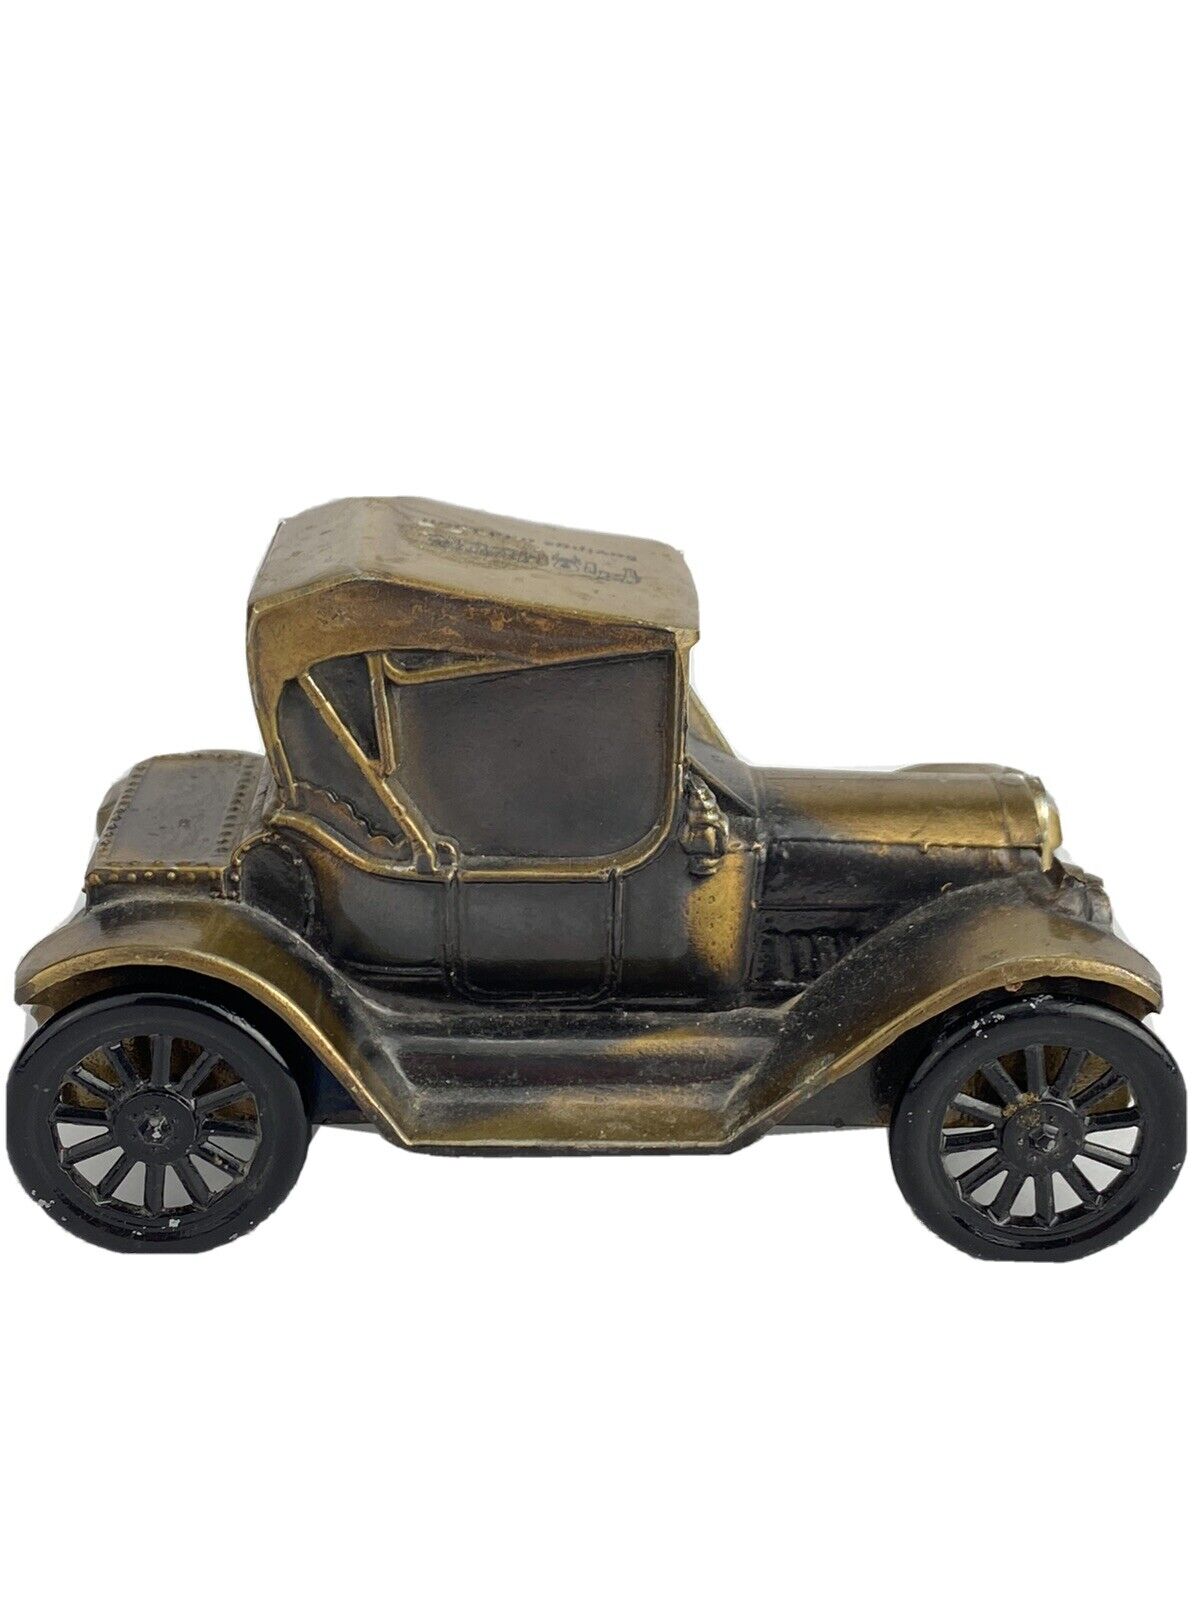 Die Cast Metal Vintage 1915 Chevy Car Bank Marked Banthrico Inc. Pioneer Savings